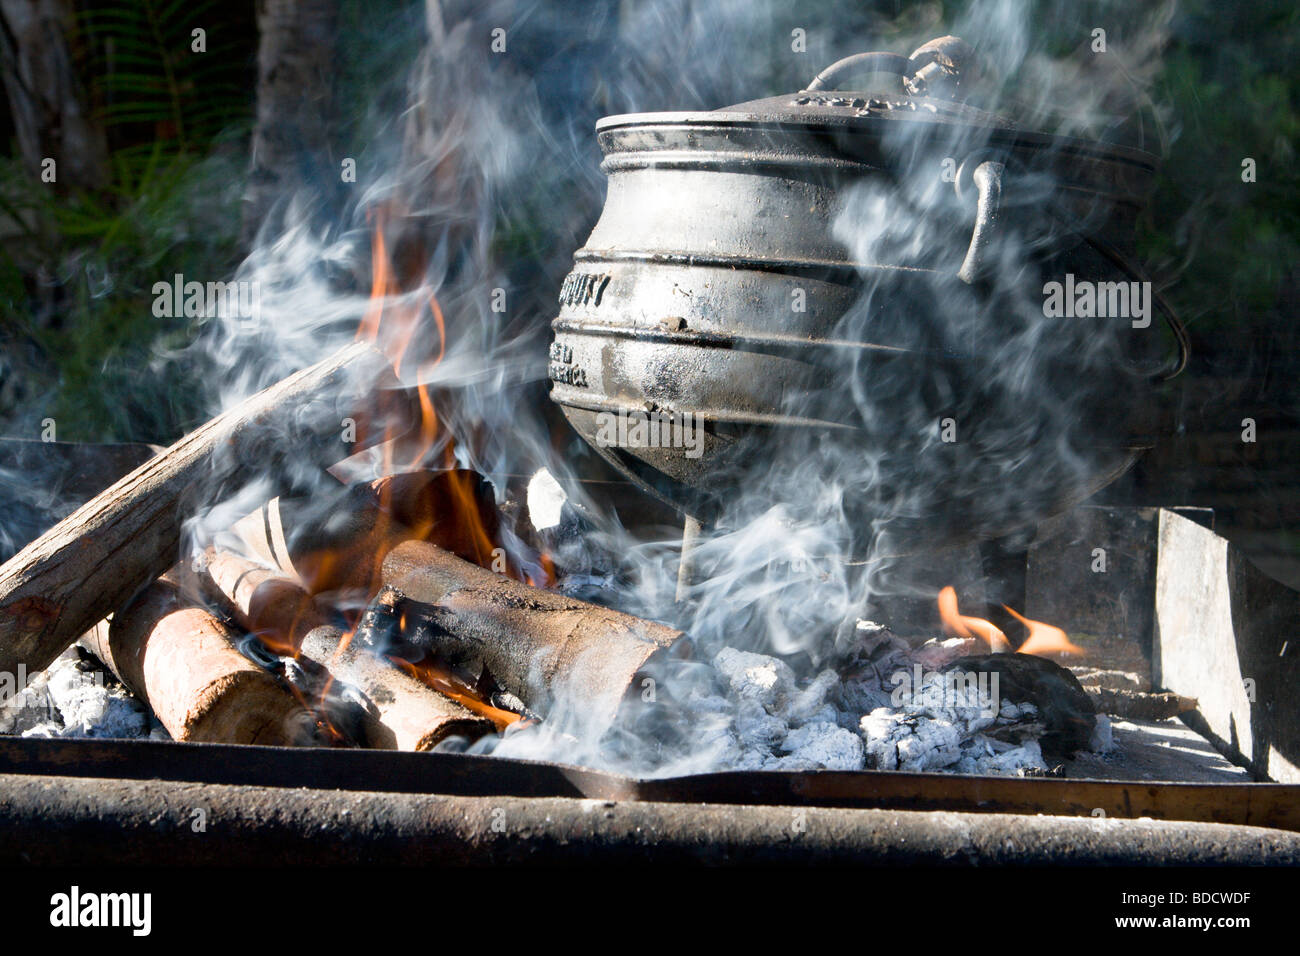 Kochen am offenen Feuer mit einem gusseisernen Topf in Südafrika Stockfoto